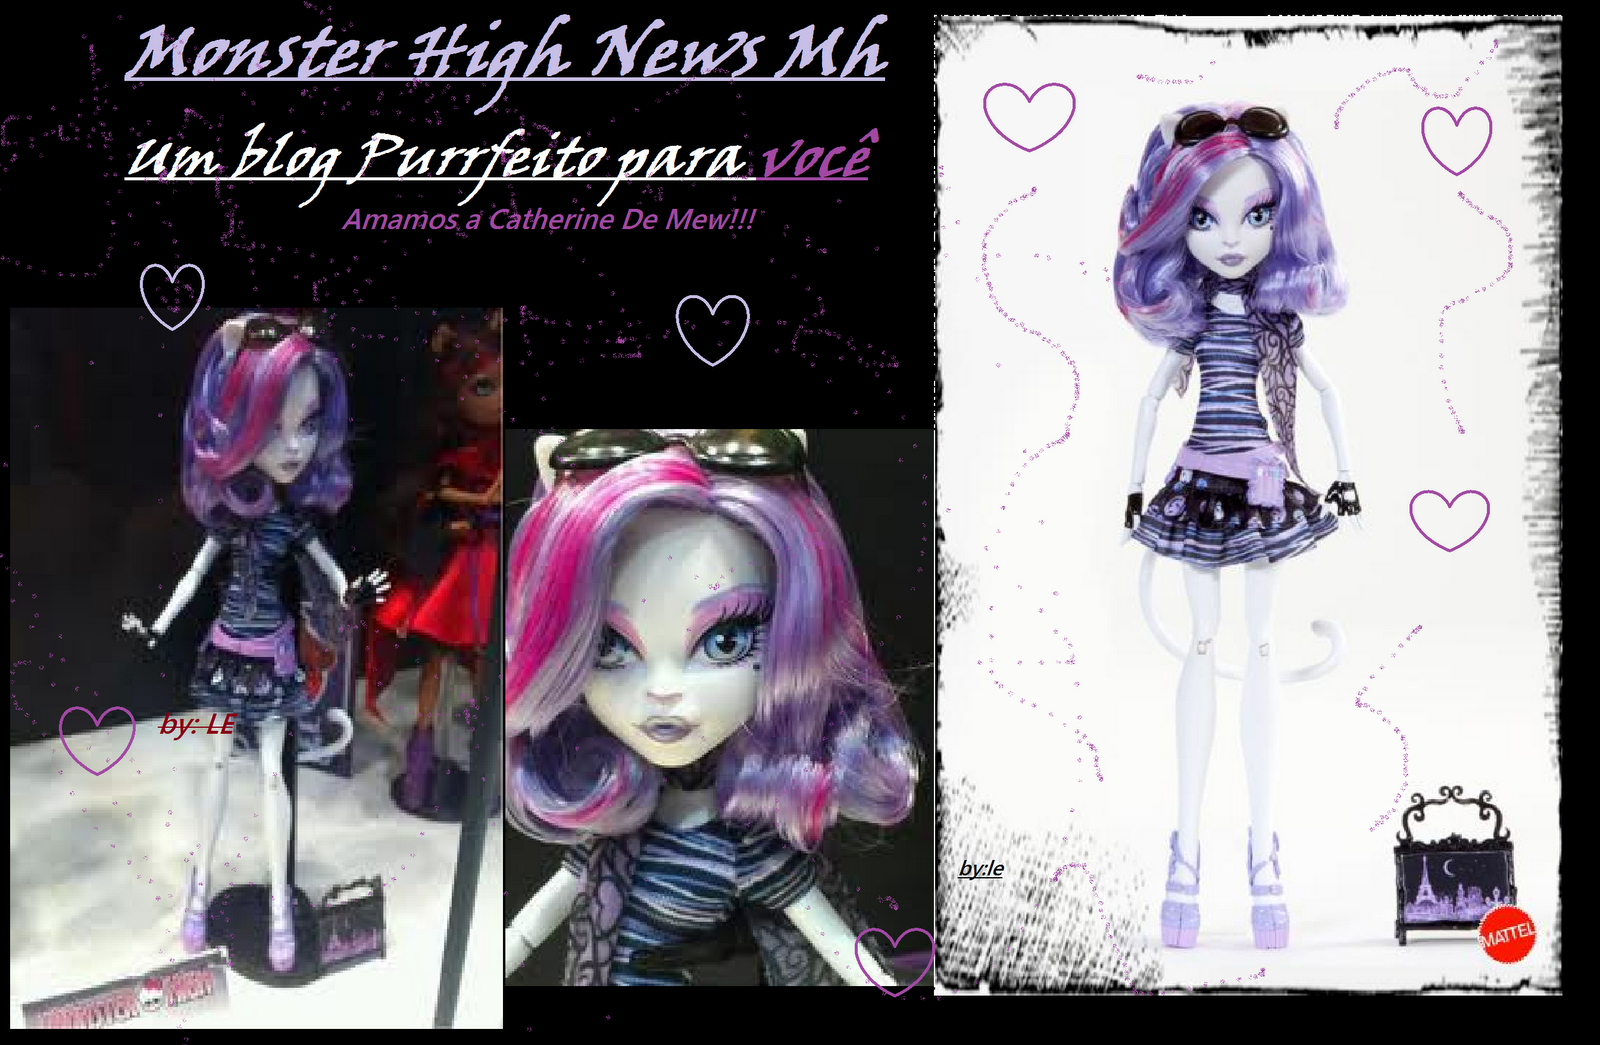 Monster High News MH